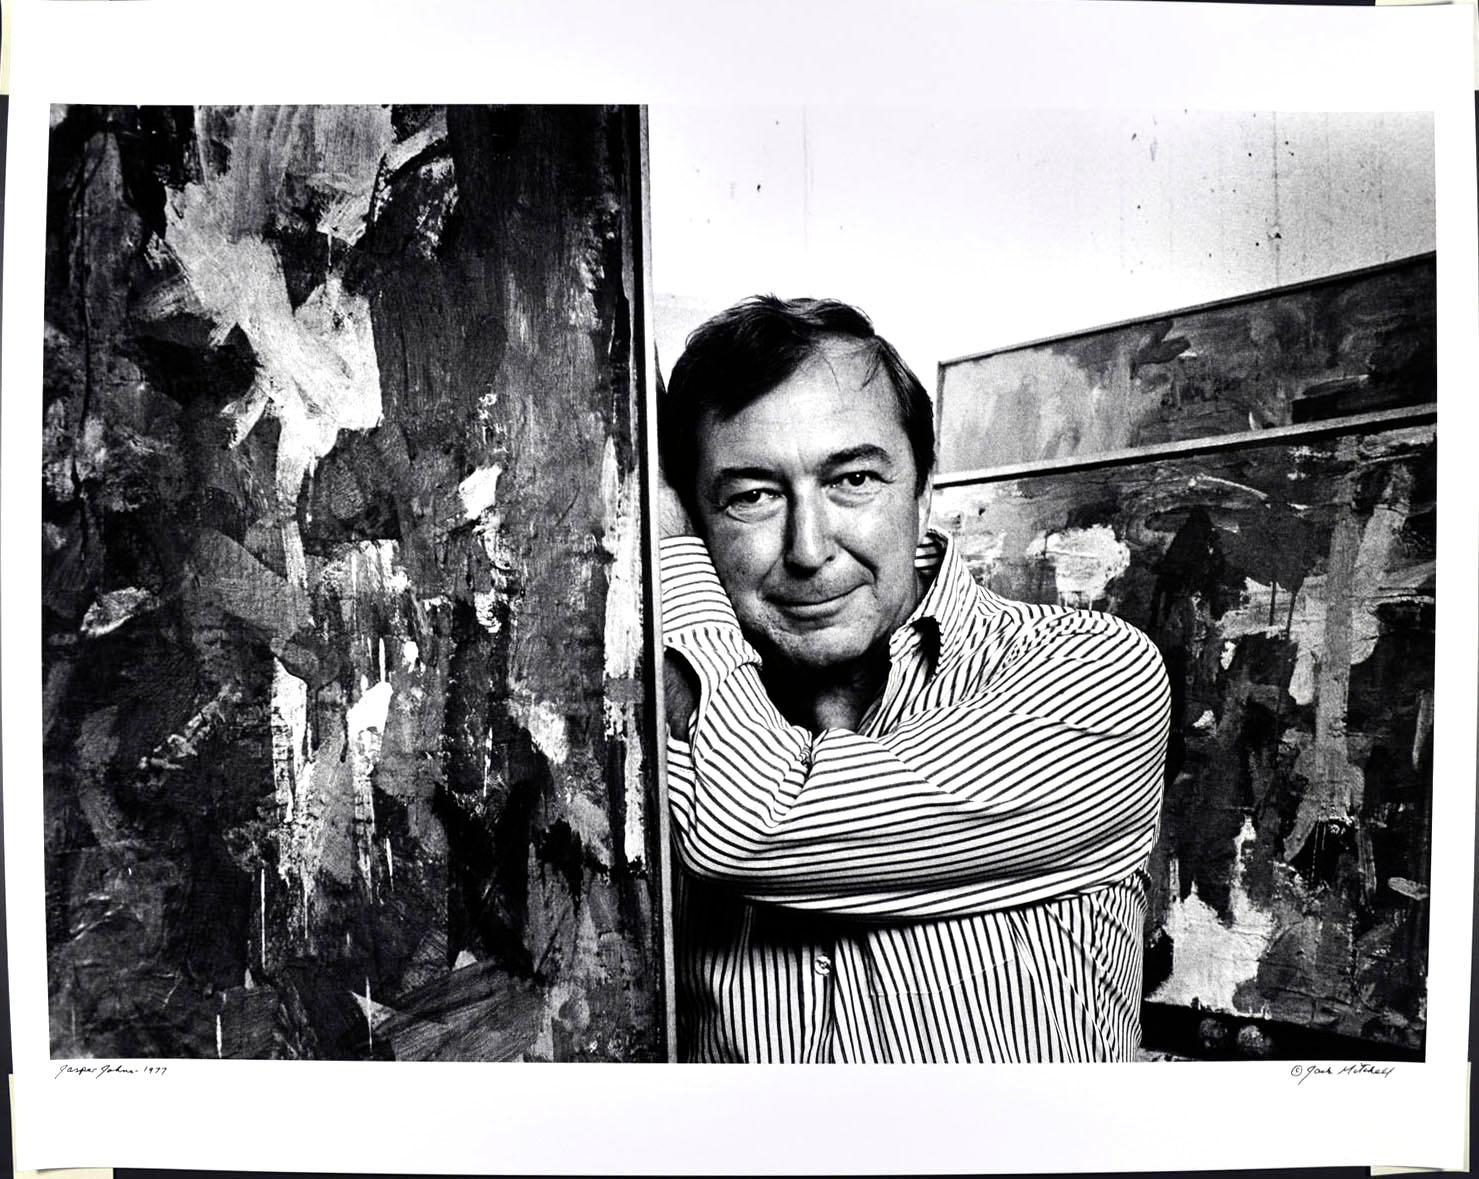 photographie à la gélatine d'argent vintage de 16 x 20" de l'artiste Jasper Johns dans son studio, photographiée en 1977. Elle est signée par Jack Mitchell au recto et au crayon au verso. Vient directement des archives de Jack Mitchell avec un